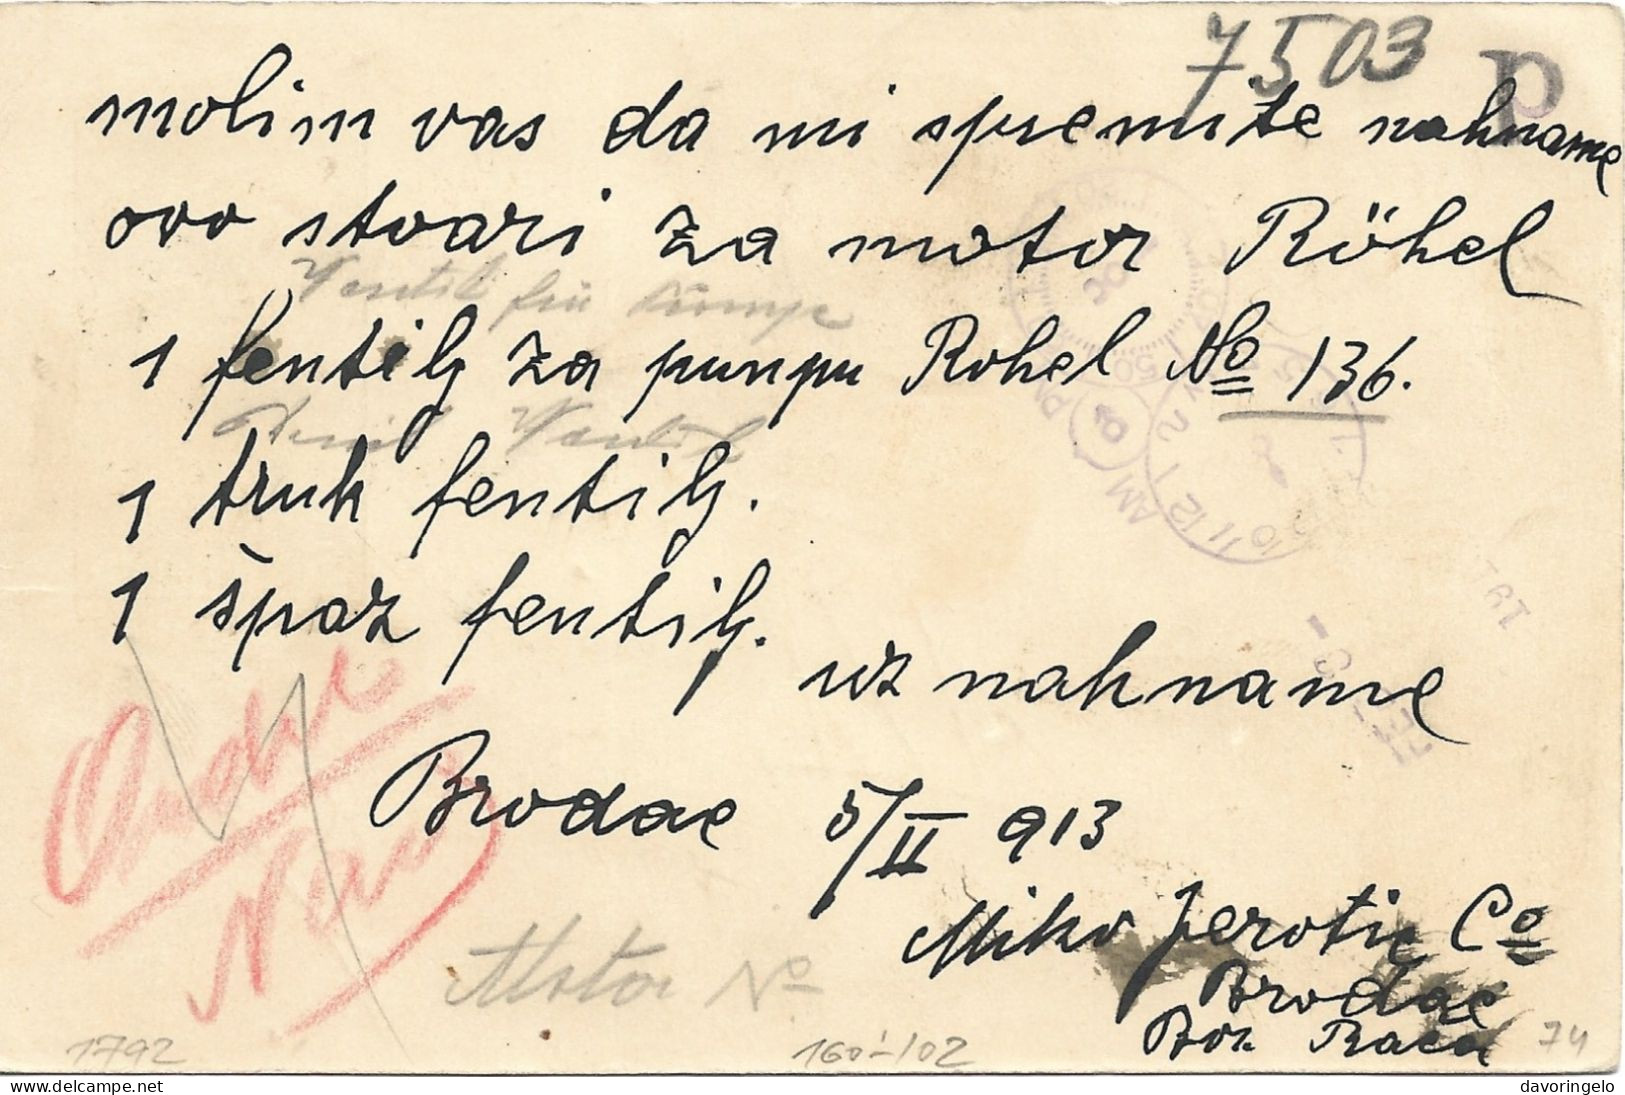 Bosnia-Herzegovina/Austria-Hungary, Postal Stationery-year 1913, Auxiliary Post Office/Ablage BRODAC, Type A1 - Bosnie-Herzegovine